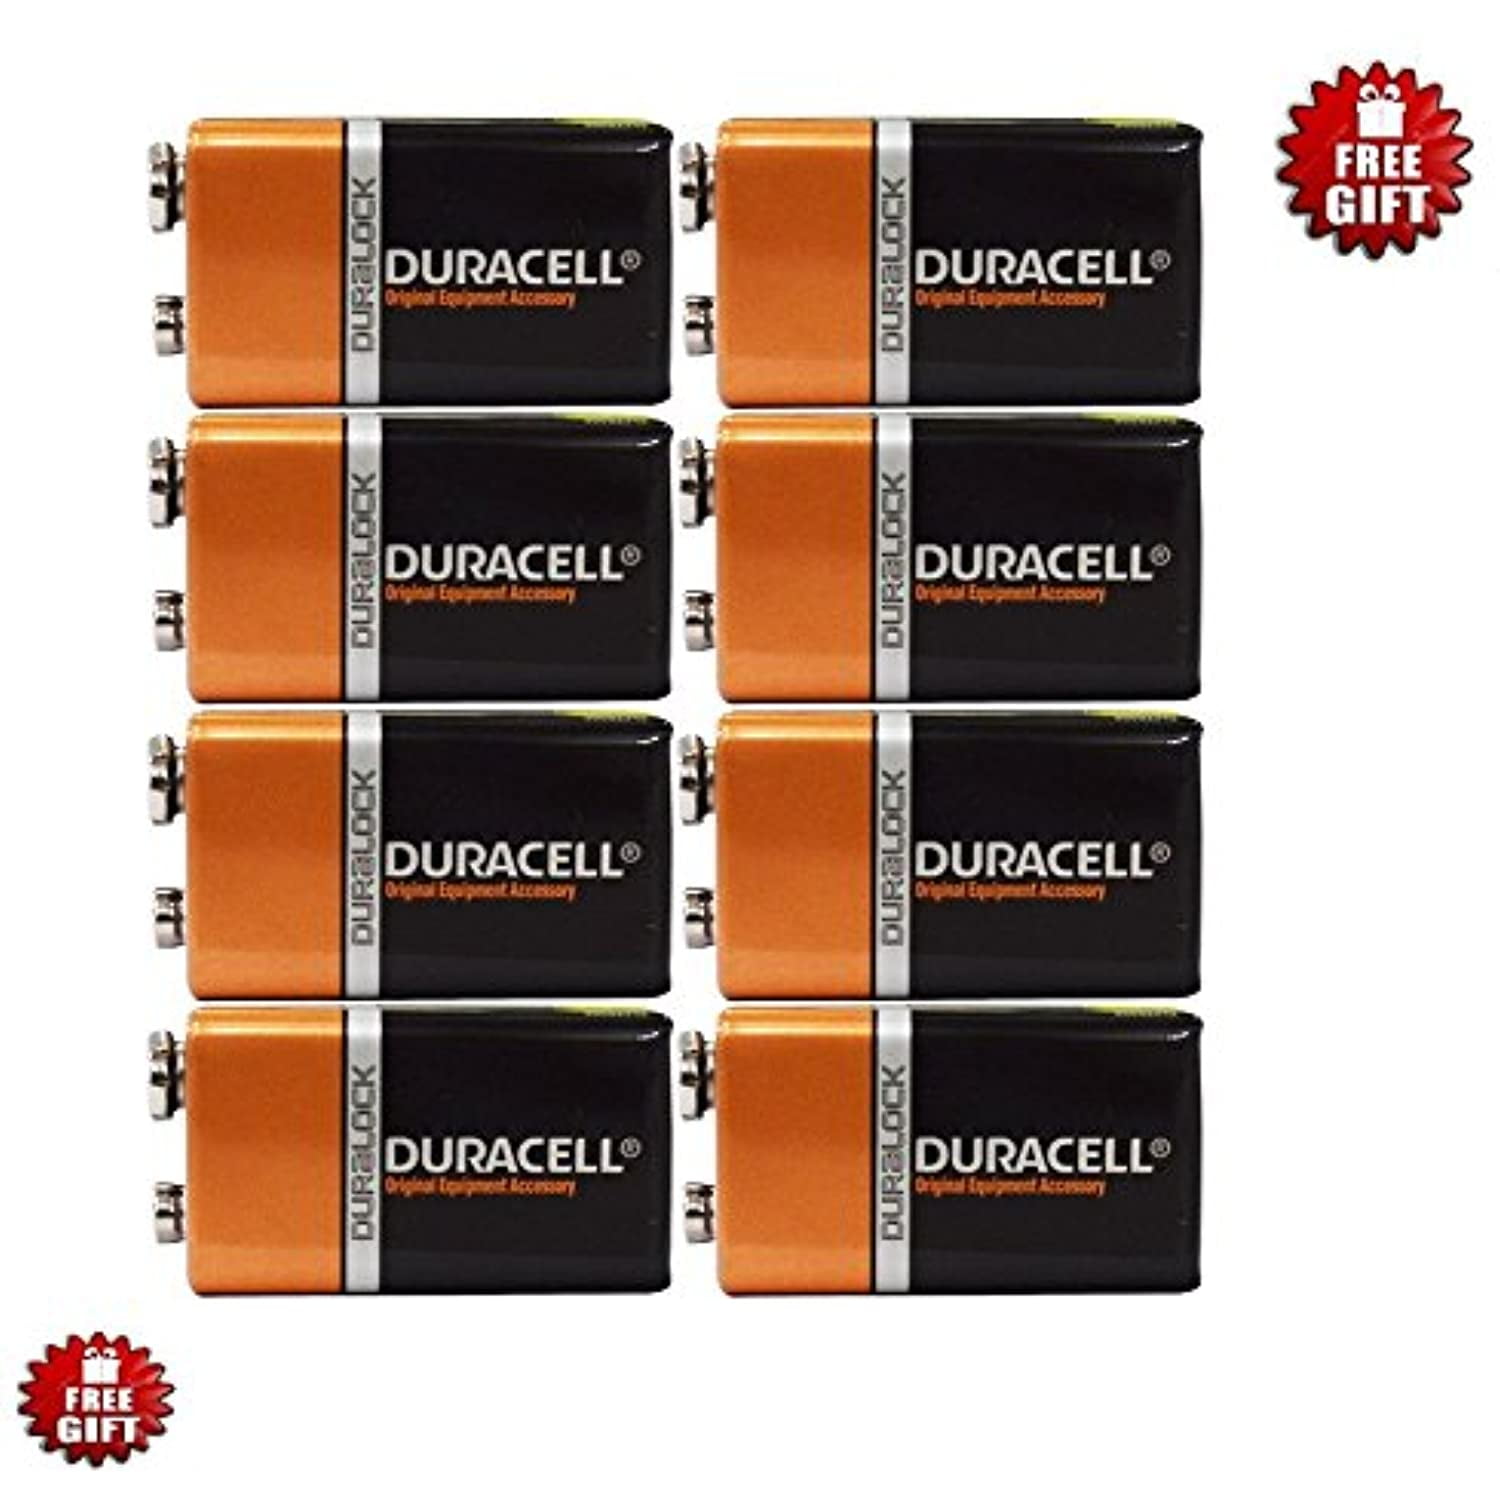 Duracell Batteries EXP 2022 9 Volt 8 Pack